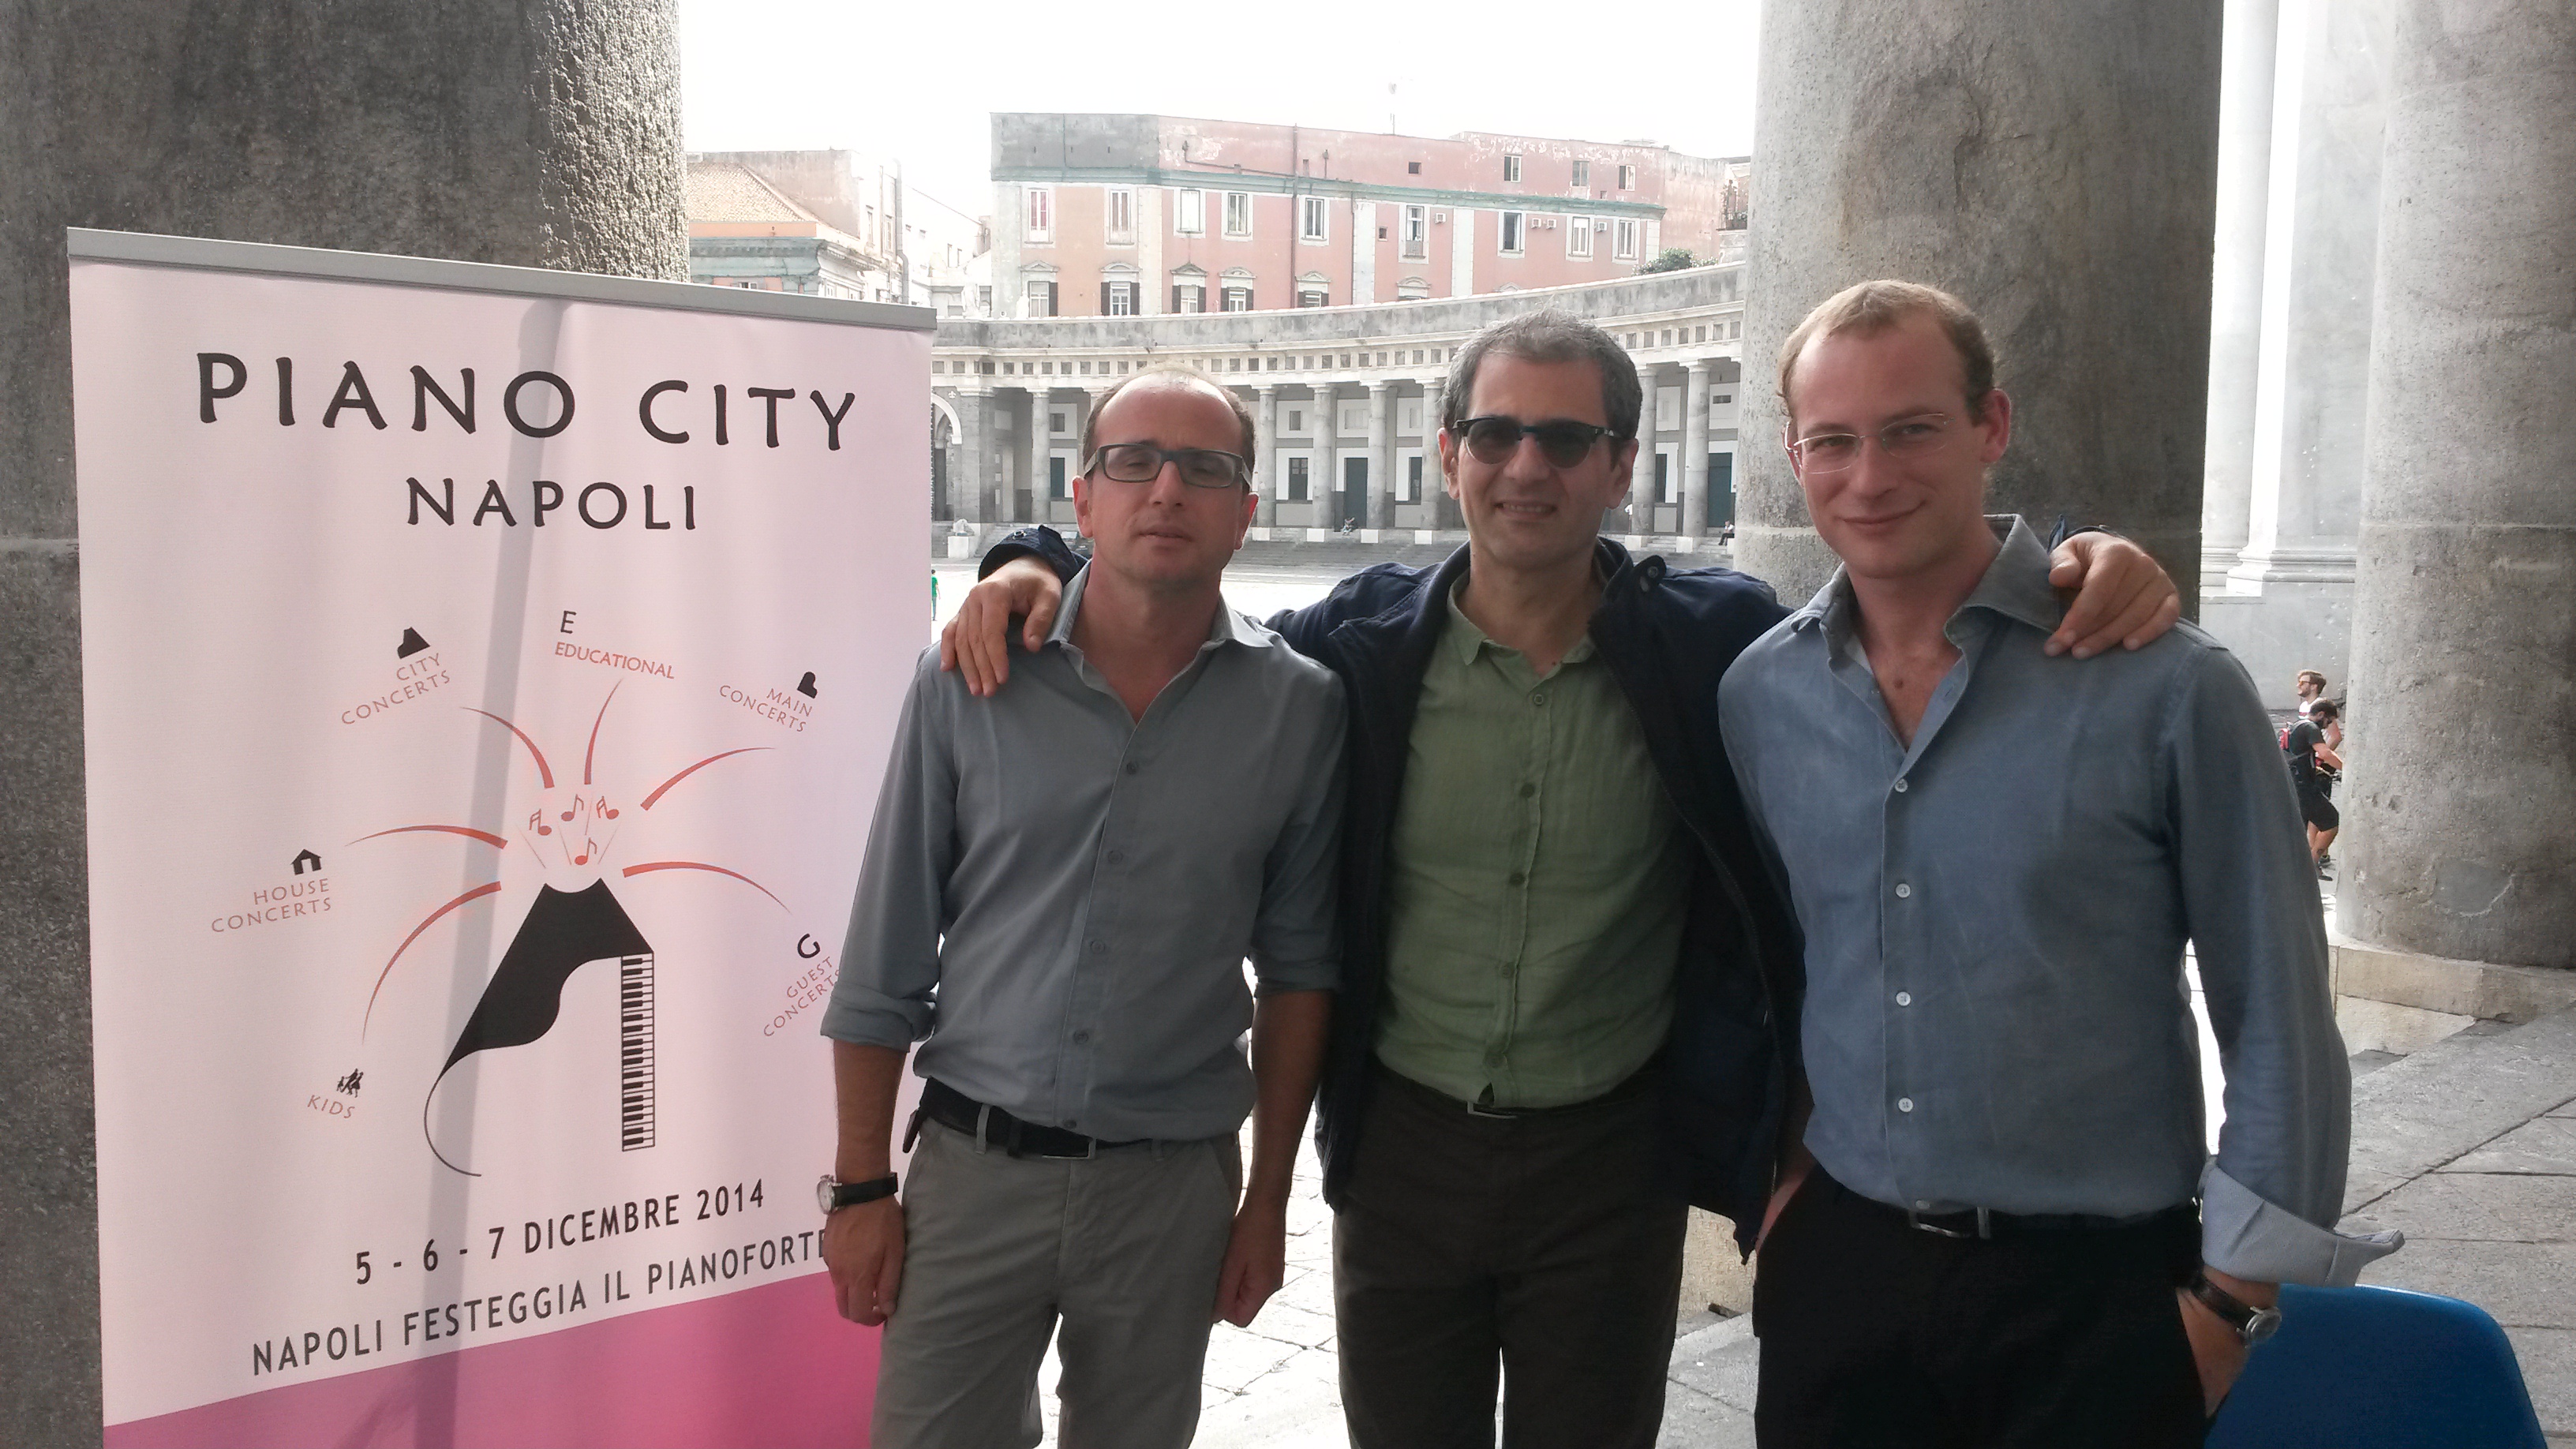 Piano City Napoli organizzatori